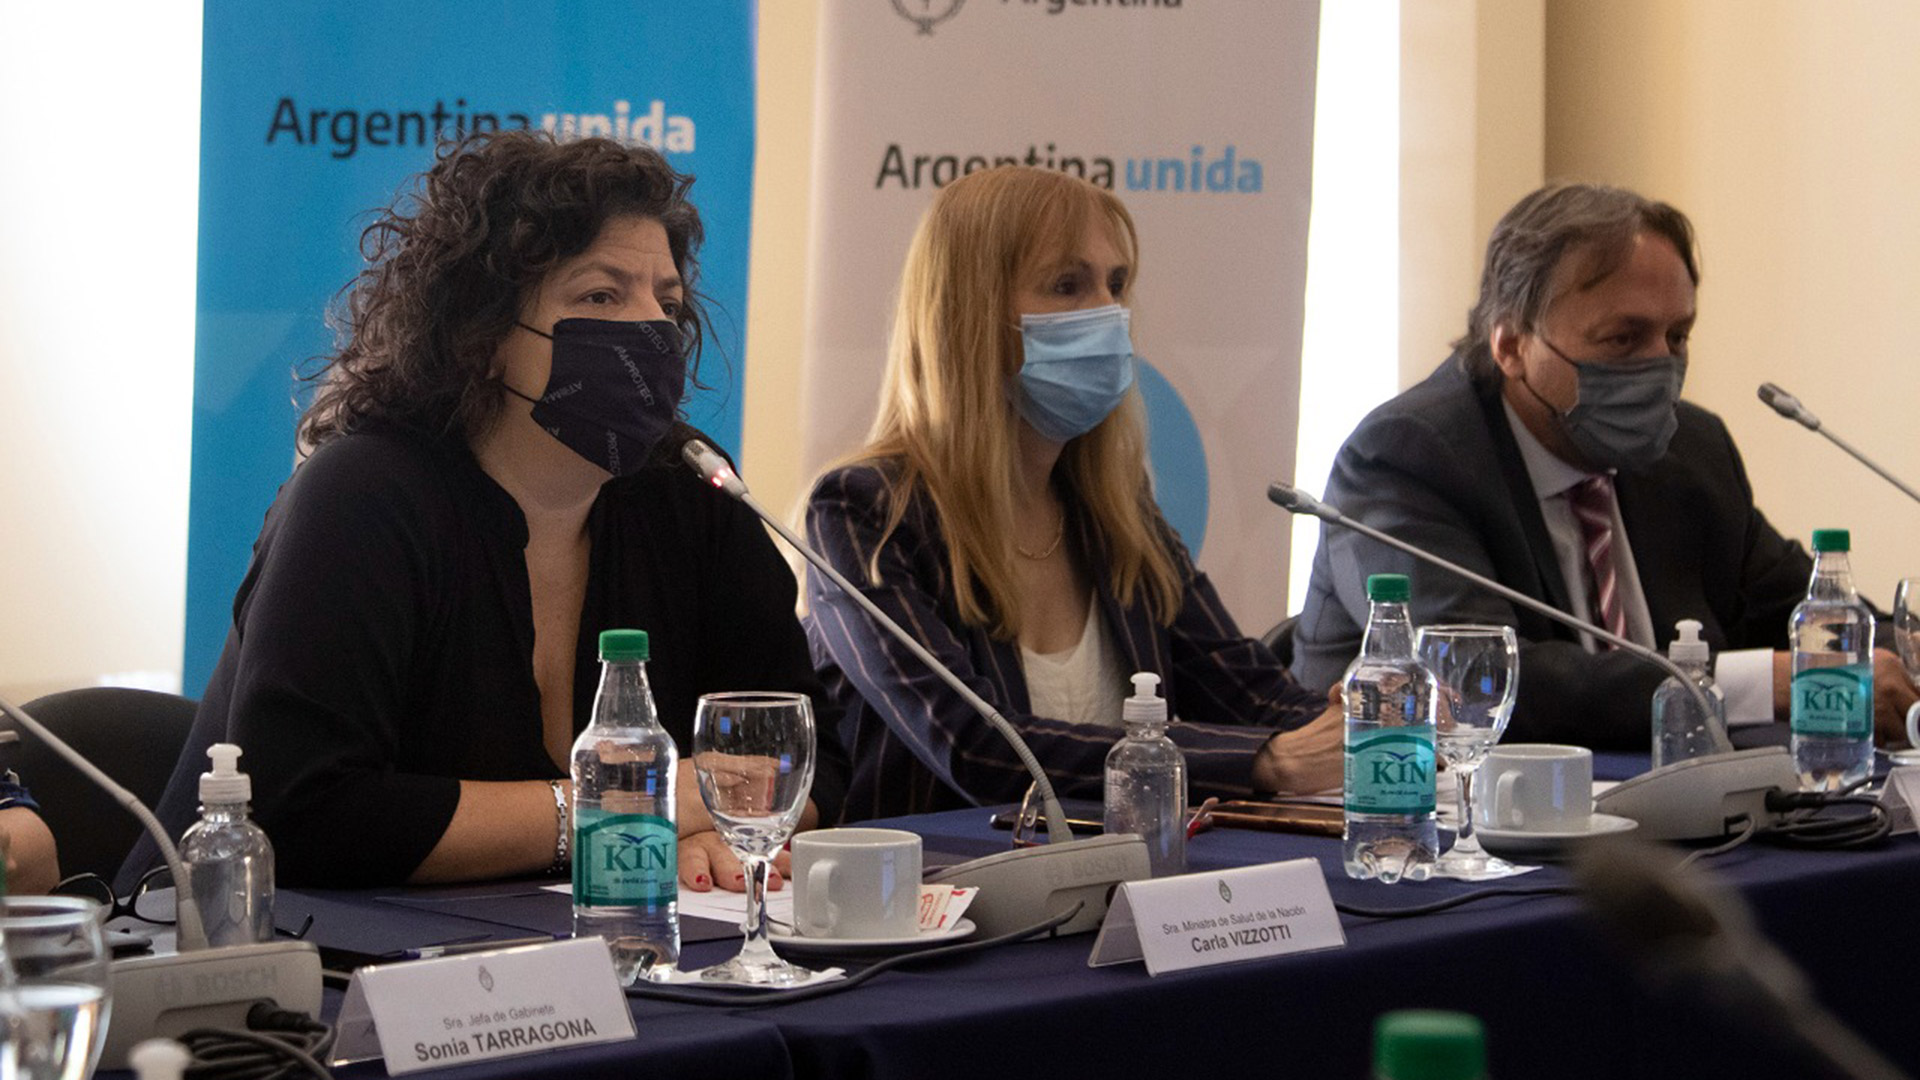 En el encuentro se habló de implementar un trabajo conjunto para prevenir una posible tercera ola de coronavirus en la Argentina